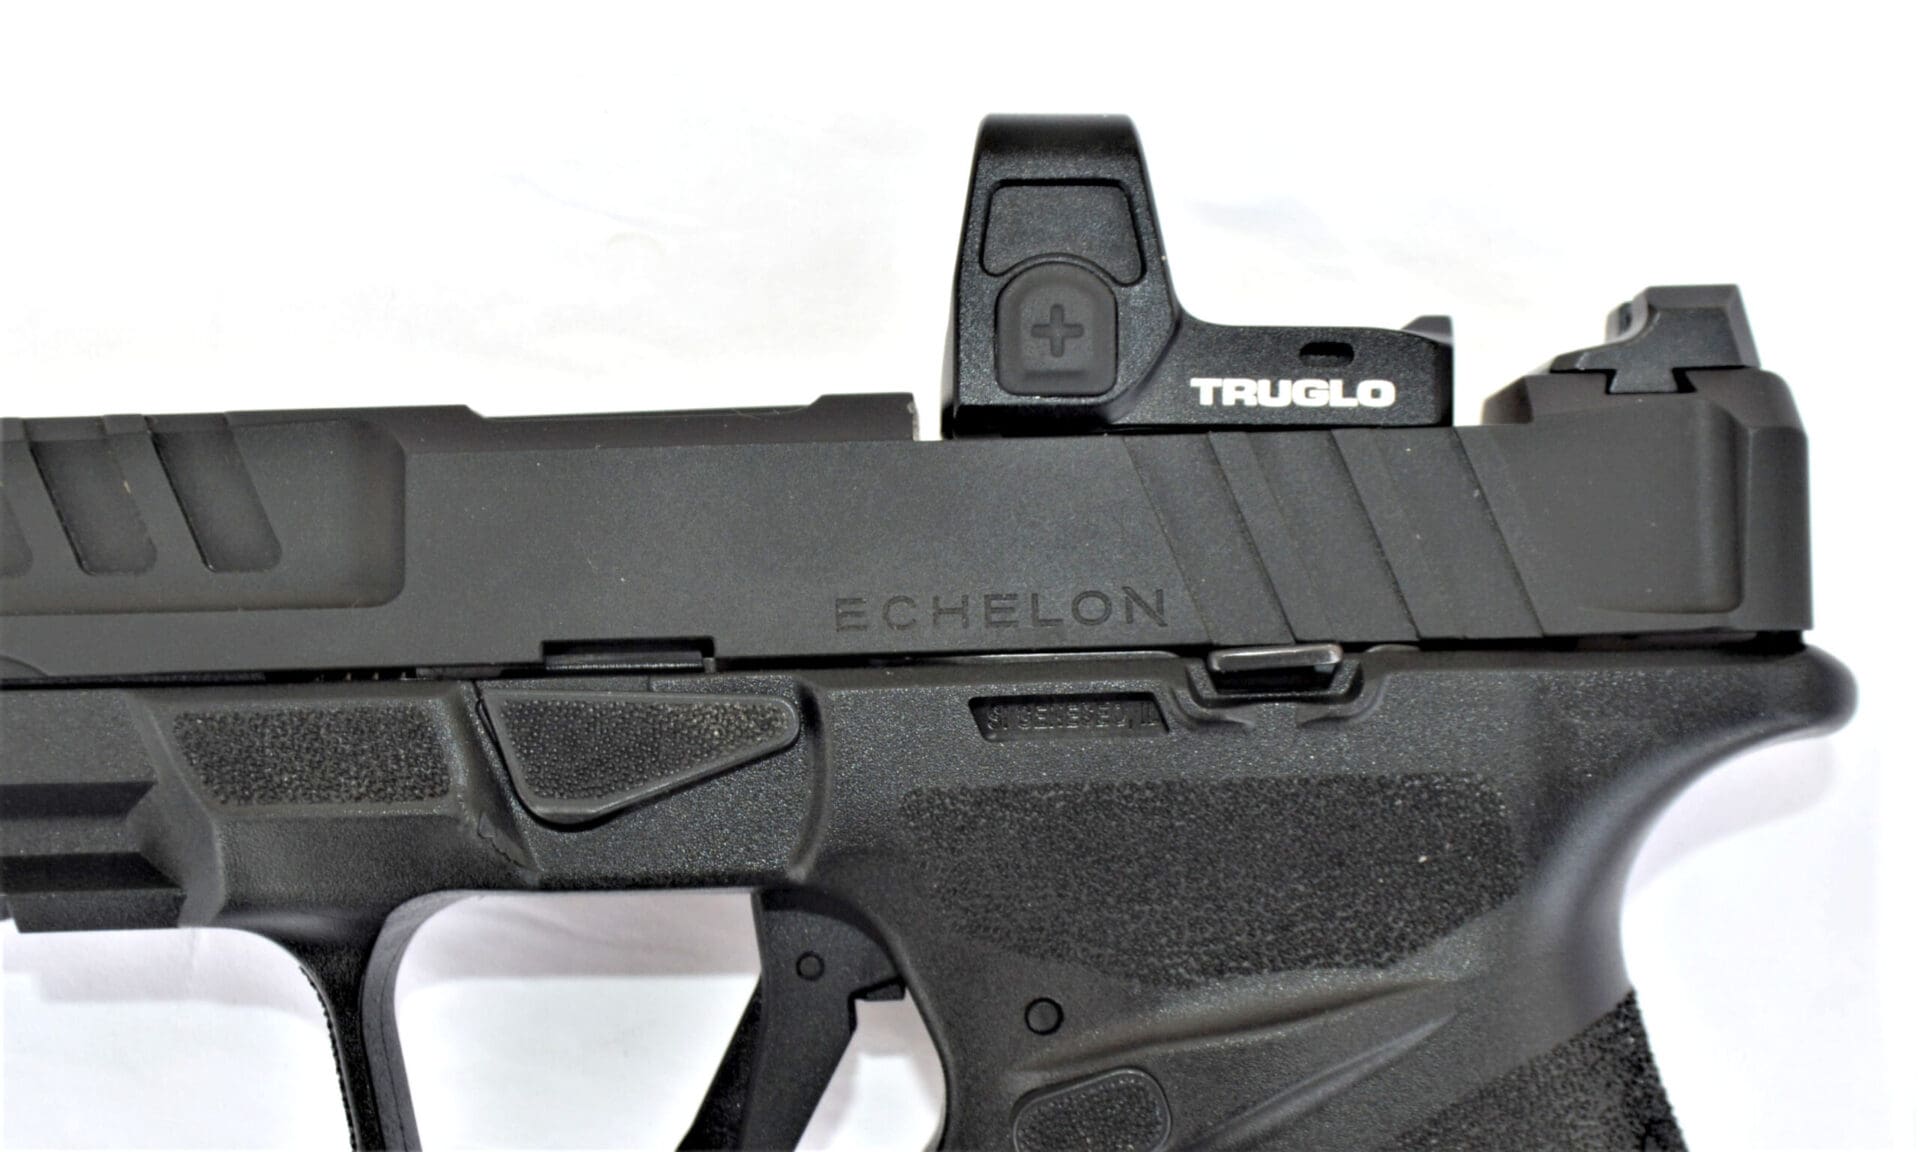 Springfield Echelon modular gun review